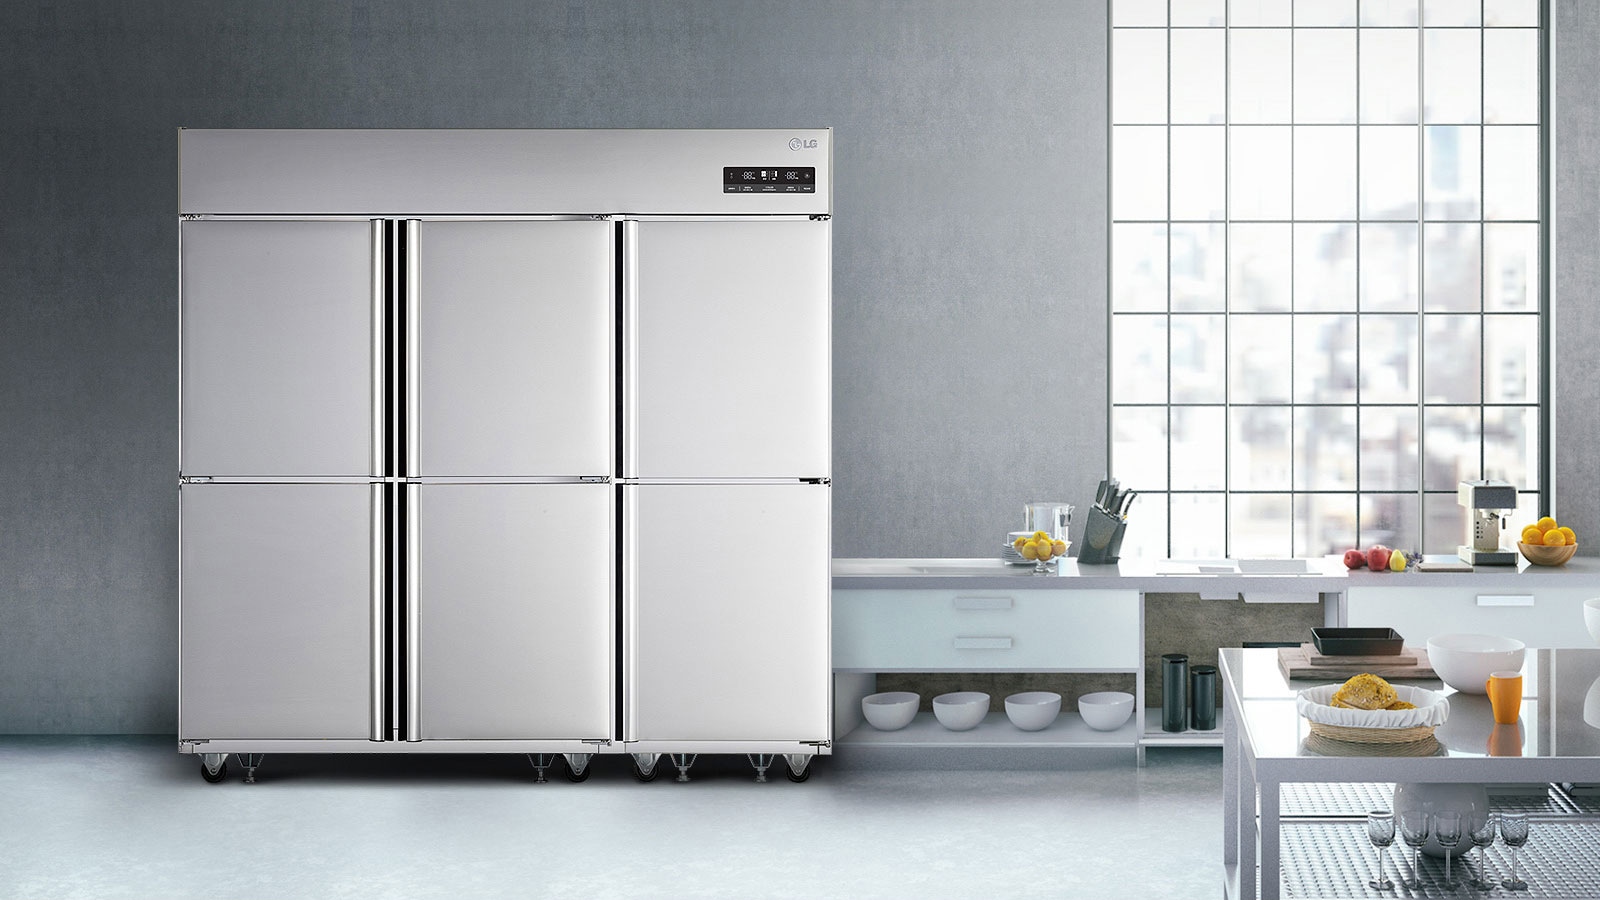 요식업의 성공을 부르는 LG 비즈니스 냉장고1